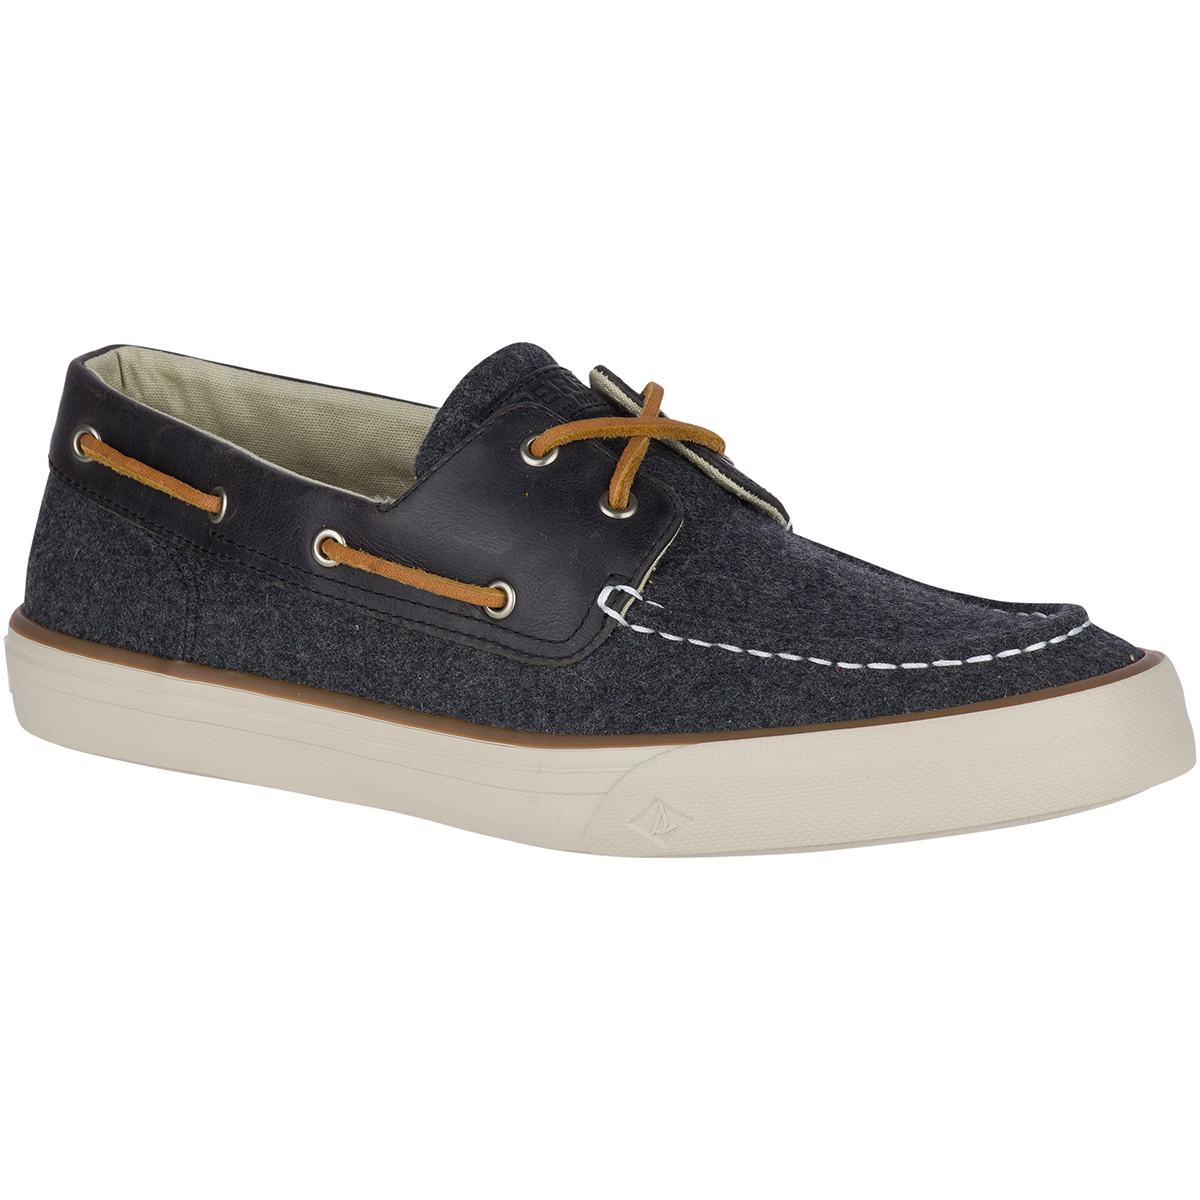 Sperry Men's Bahama Ii Wool Sneaker Boat Shoes - Black, 9.5